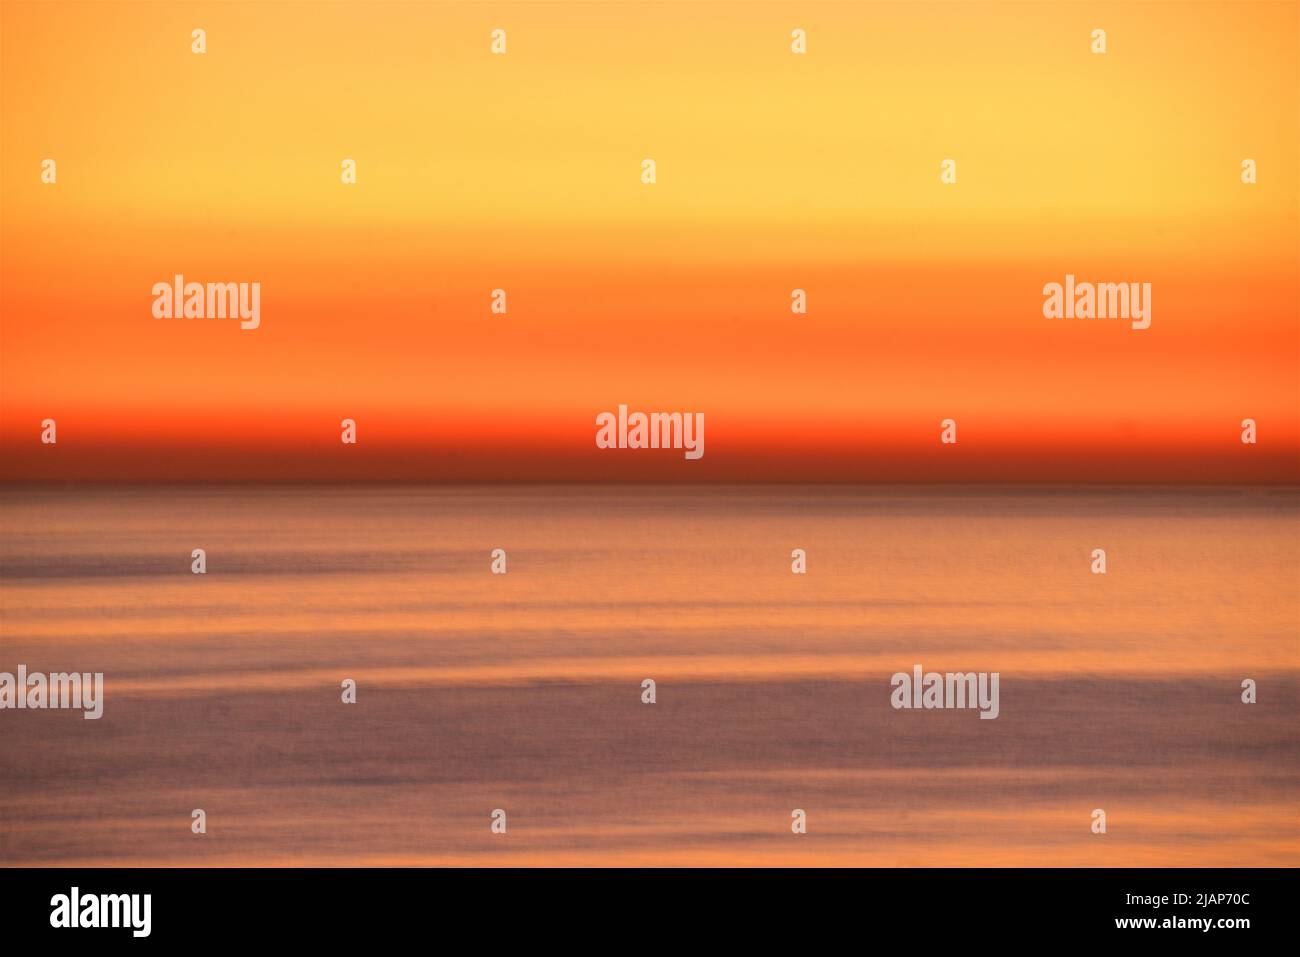 Détail abstrait des ondulations floues au mouvement sur une mer calme avec horizon doré au crépuscule. Chaîne anglaise, Royaume-Uni. Banque D'Images